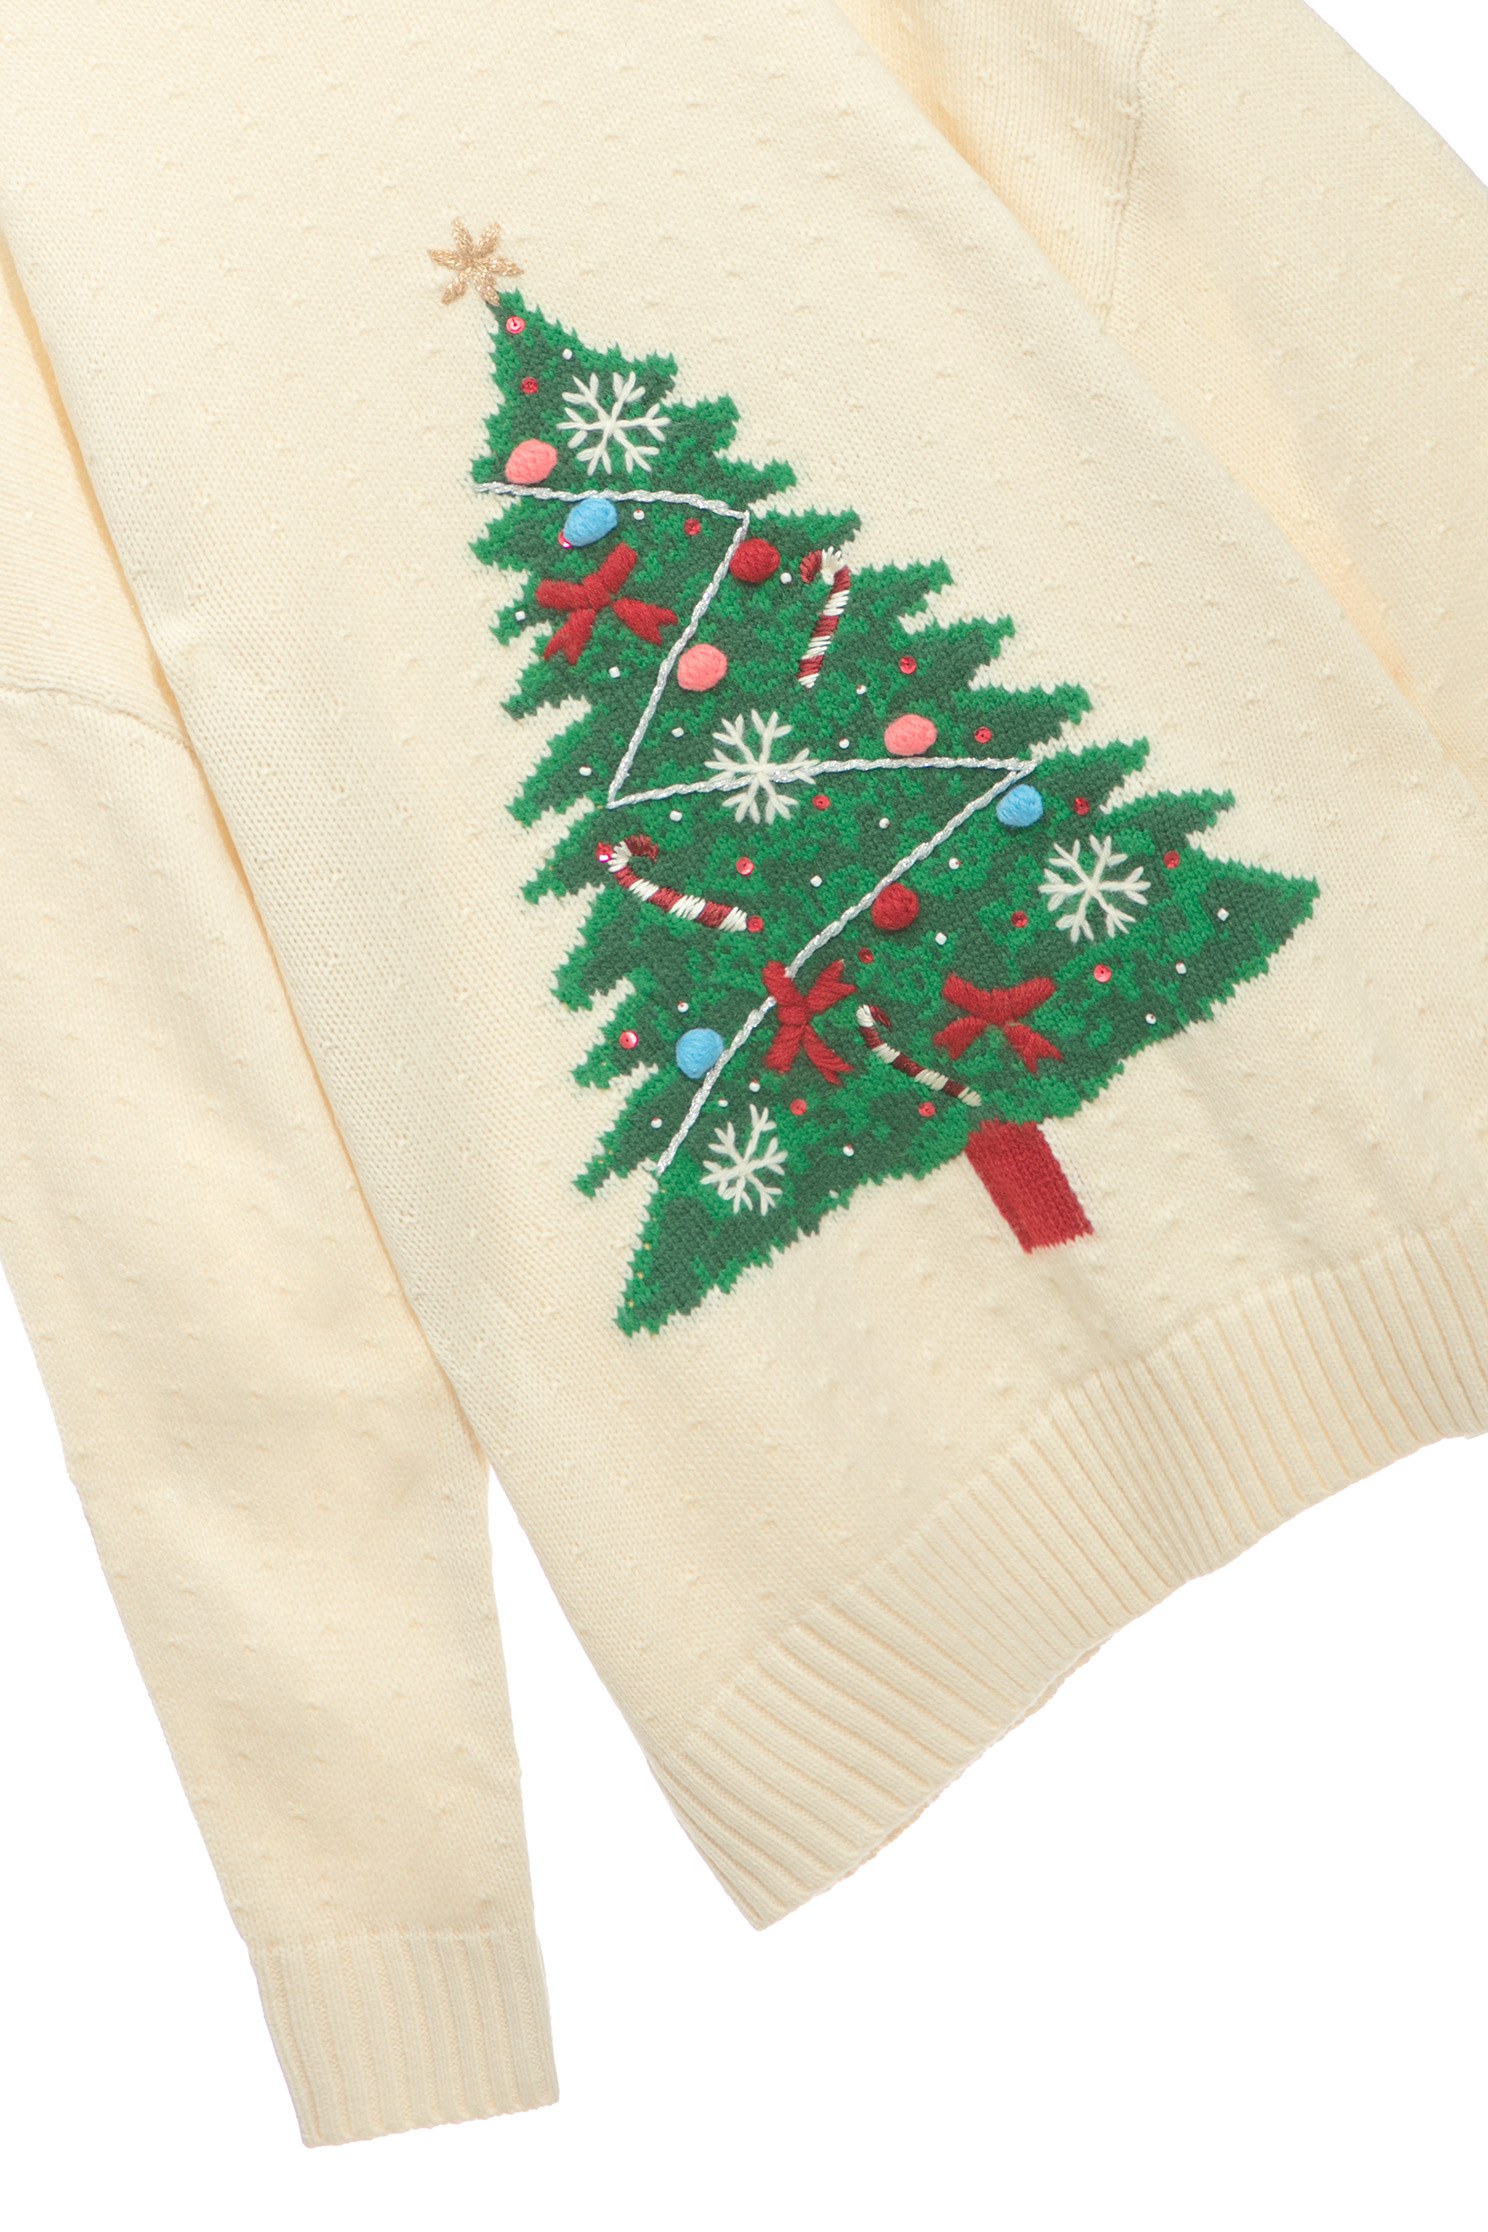 聖誕樹針織上衣聖誕樹針織上衣,上衣,秋冬穿搭,針織,針織上衣,針織衫